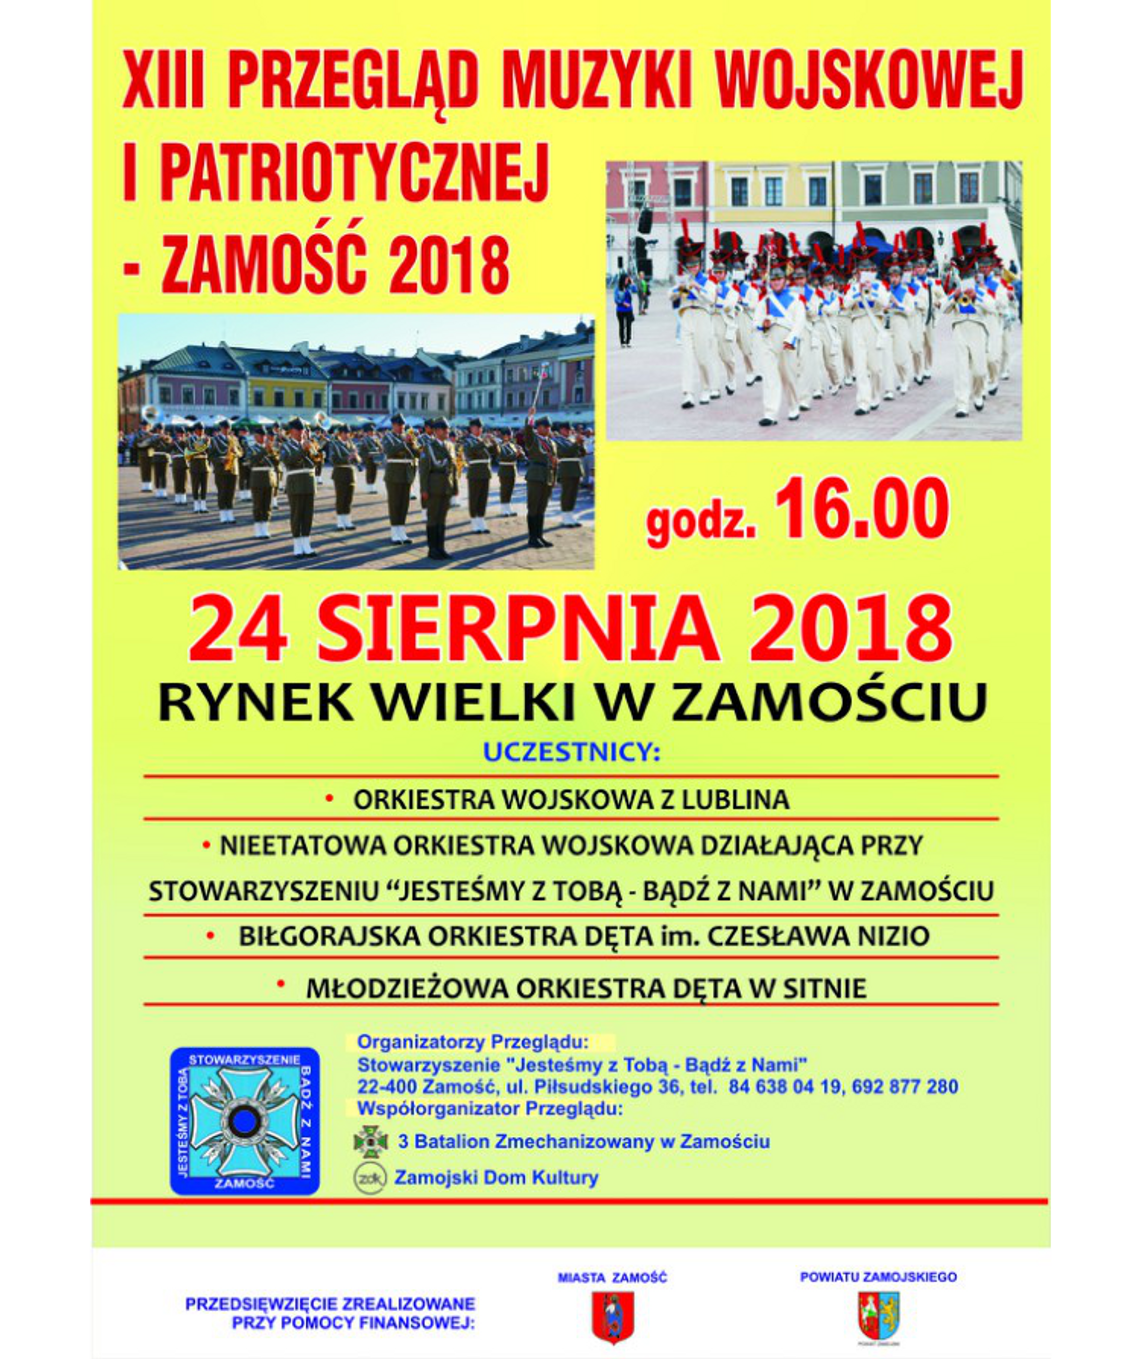 ZAMOŚĆ: XIII Przegląd Muzyki Wojskowej i Patriotycznej 2018